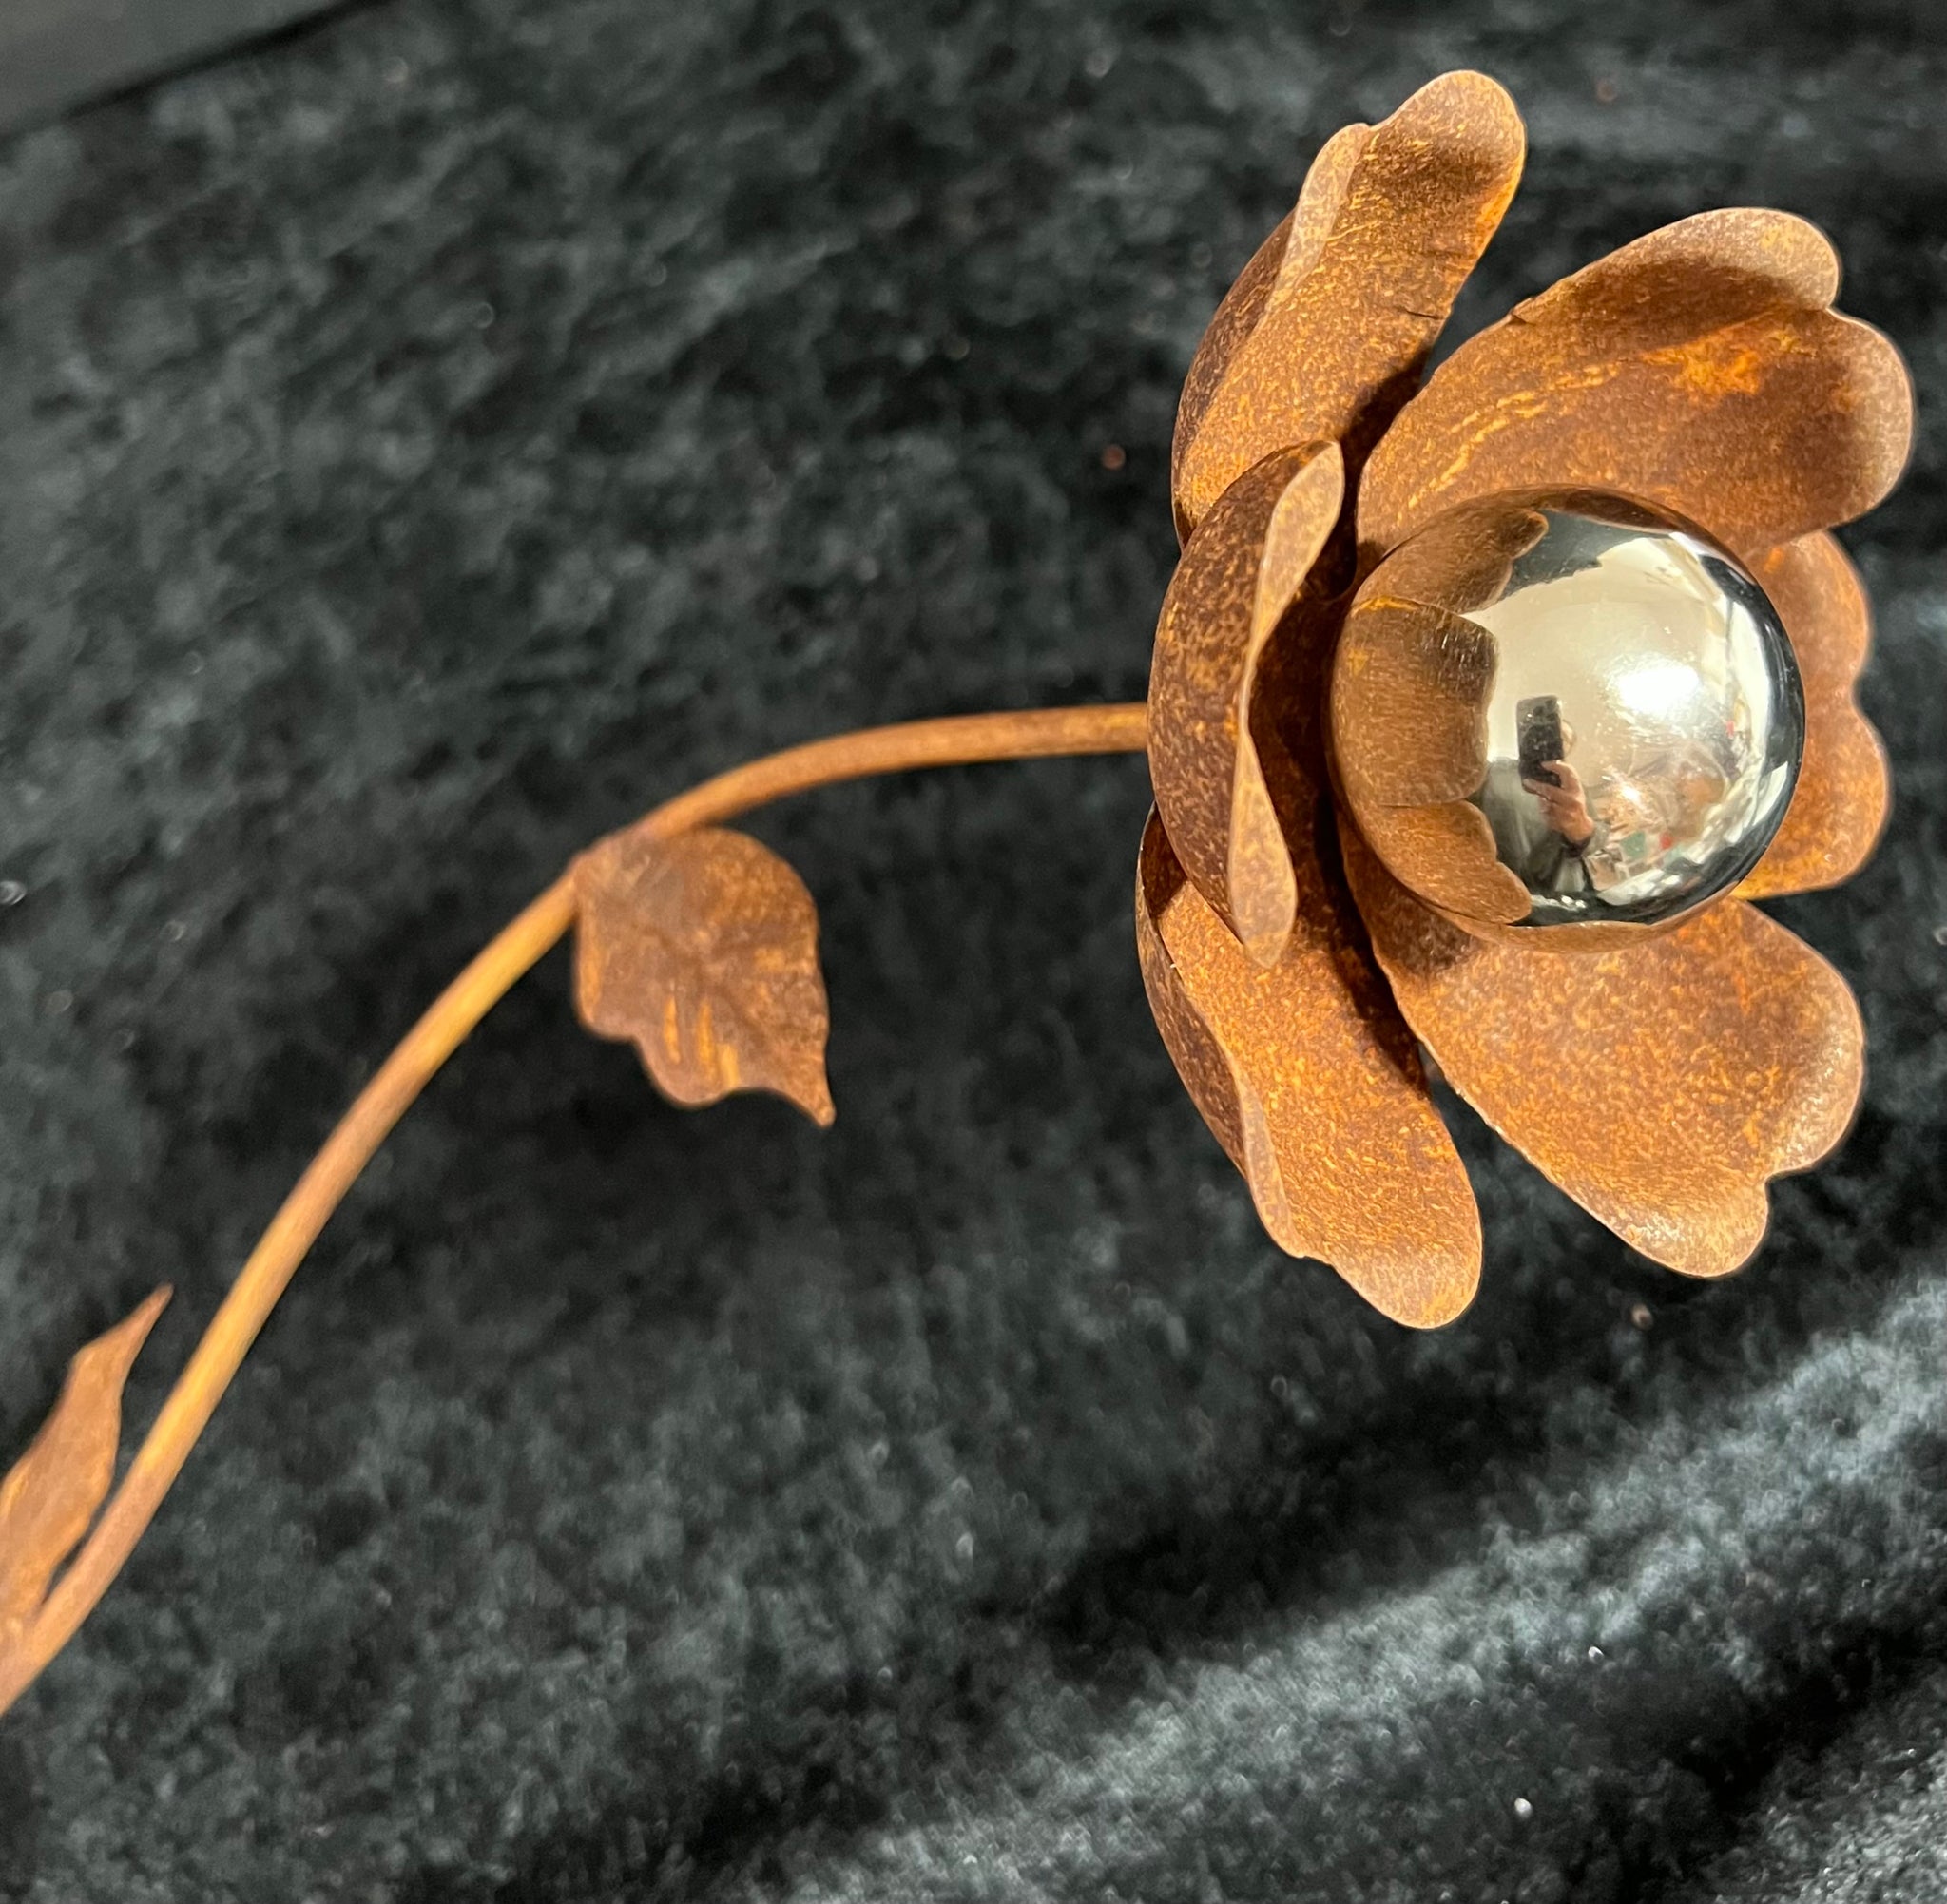 Rostig blomma med silverklot 85 cmhög